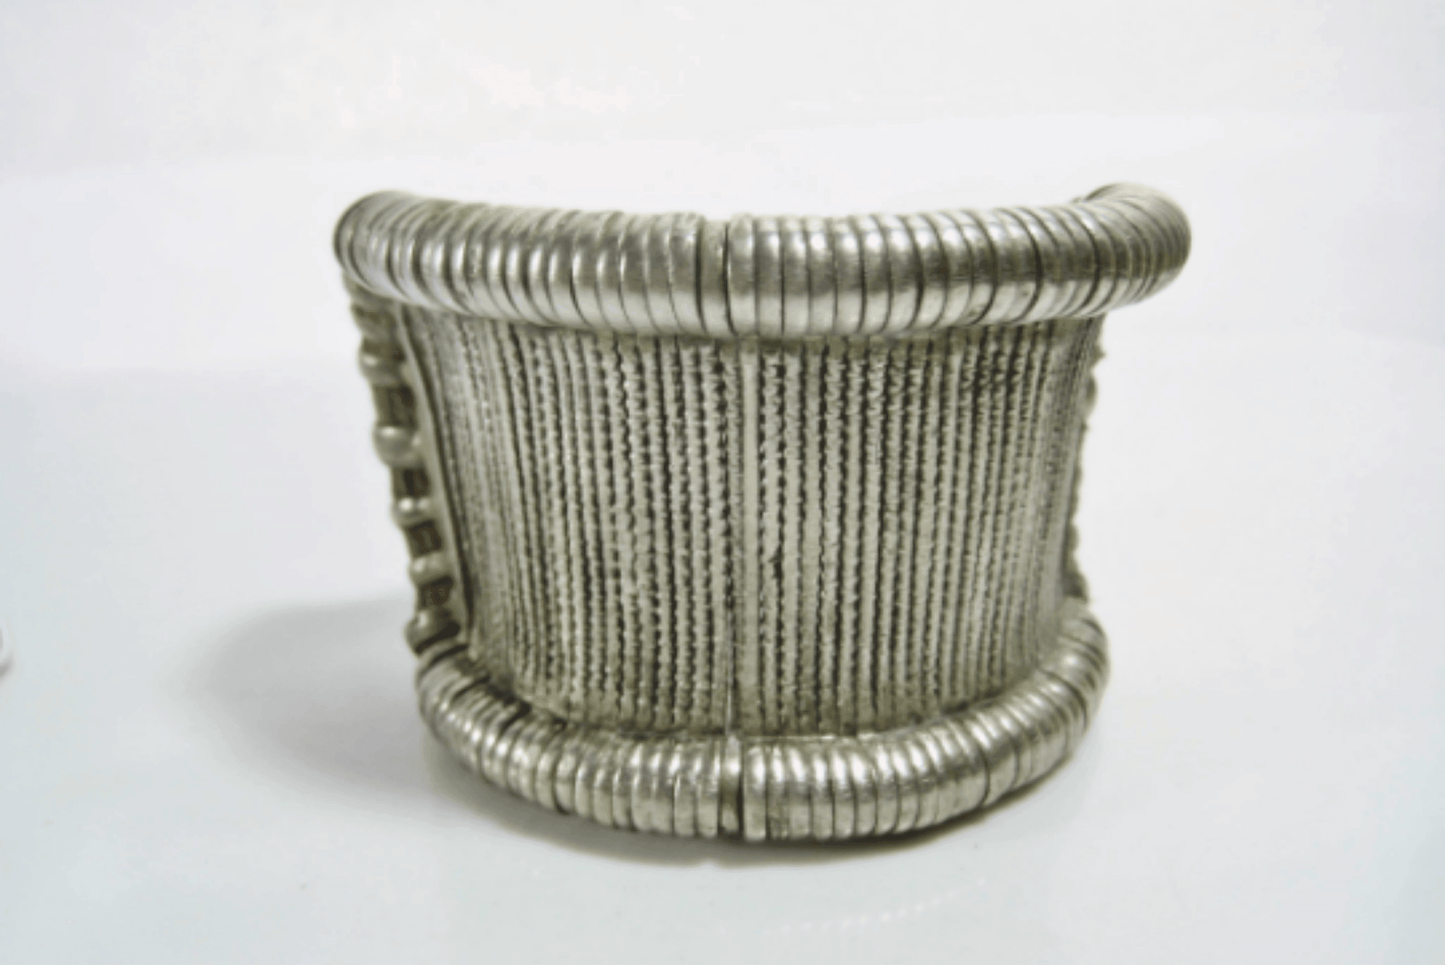 Vintage Silver Bazuband Bracelet from Rajasthan, India - Anteeka